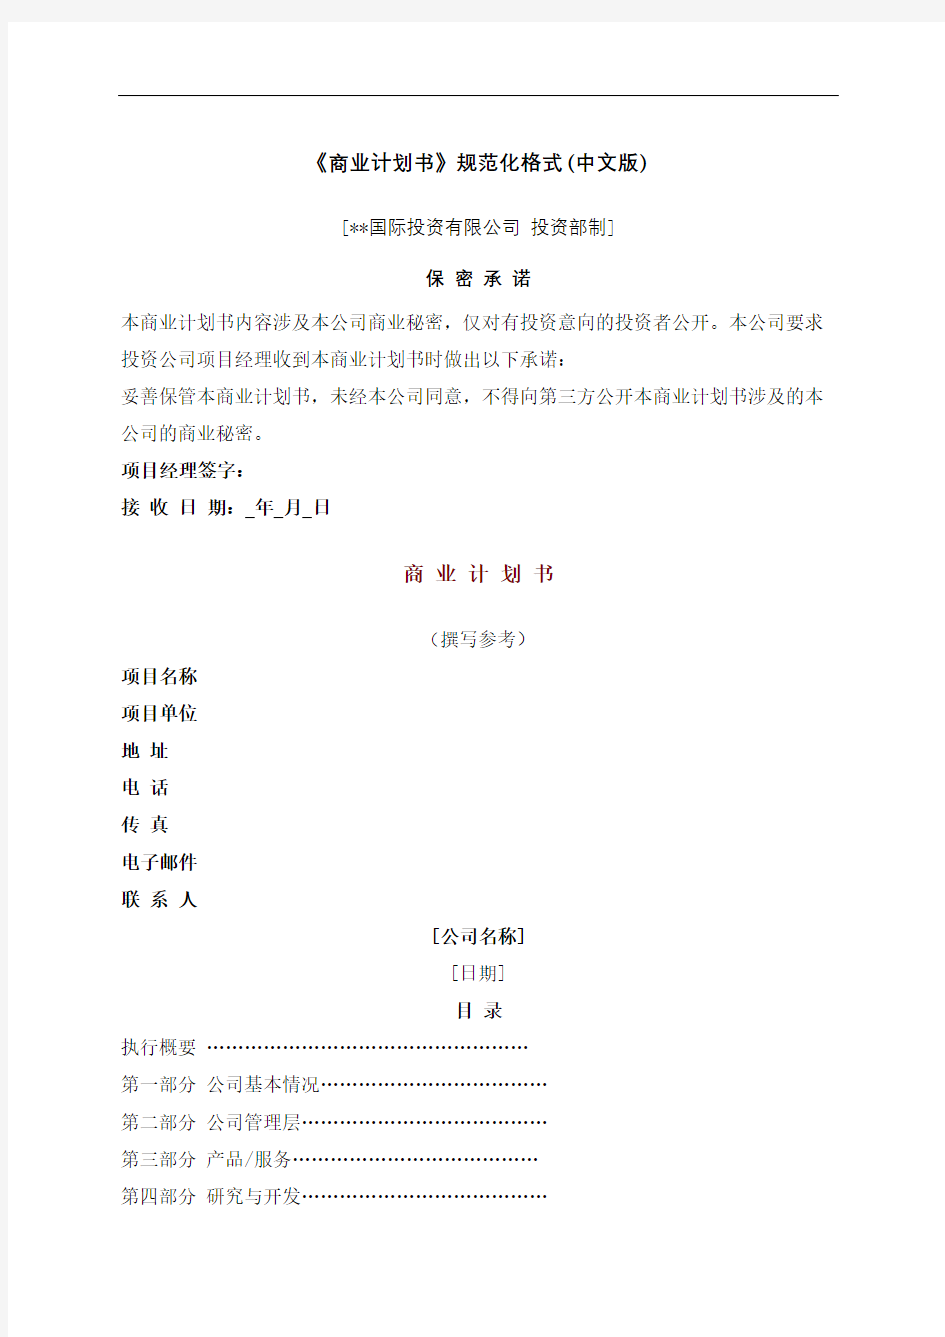 国际投资公司商业计划书规范化格式中文版